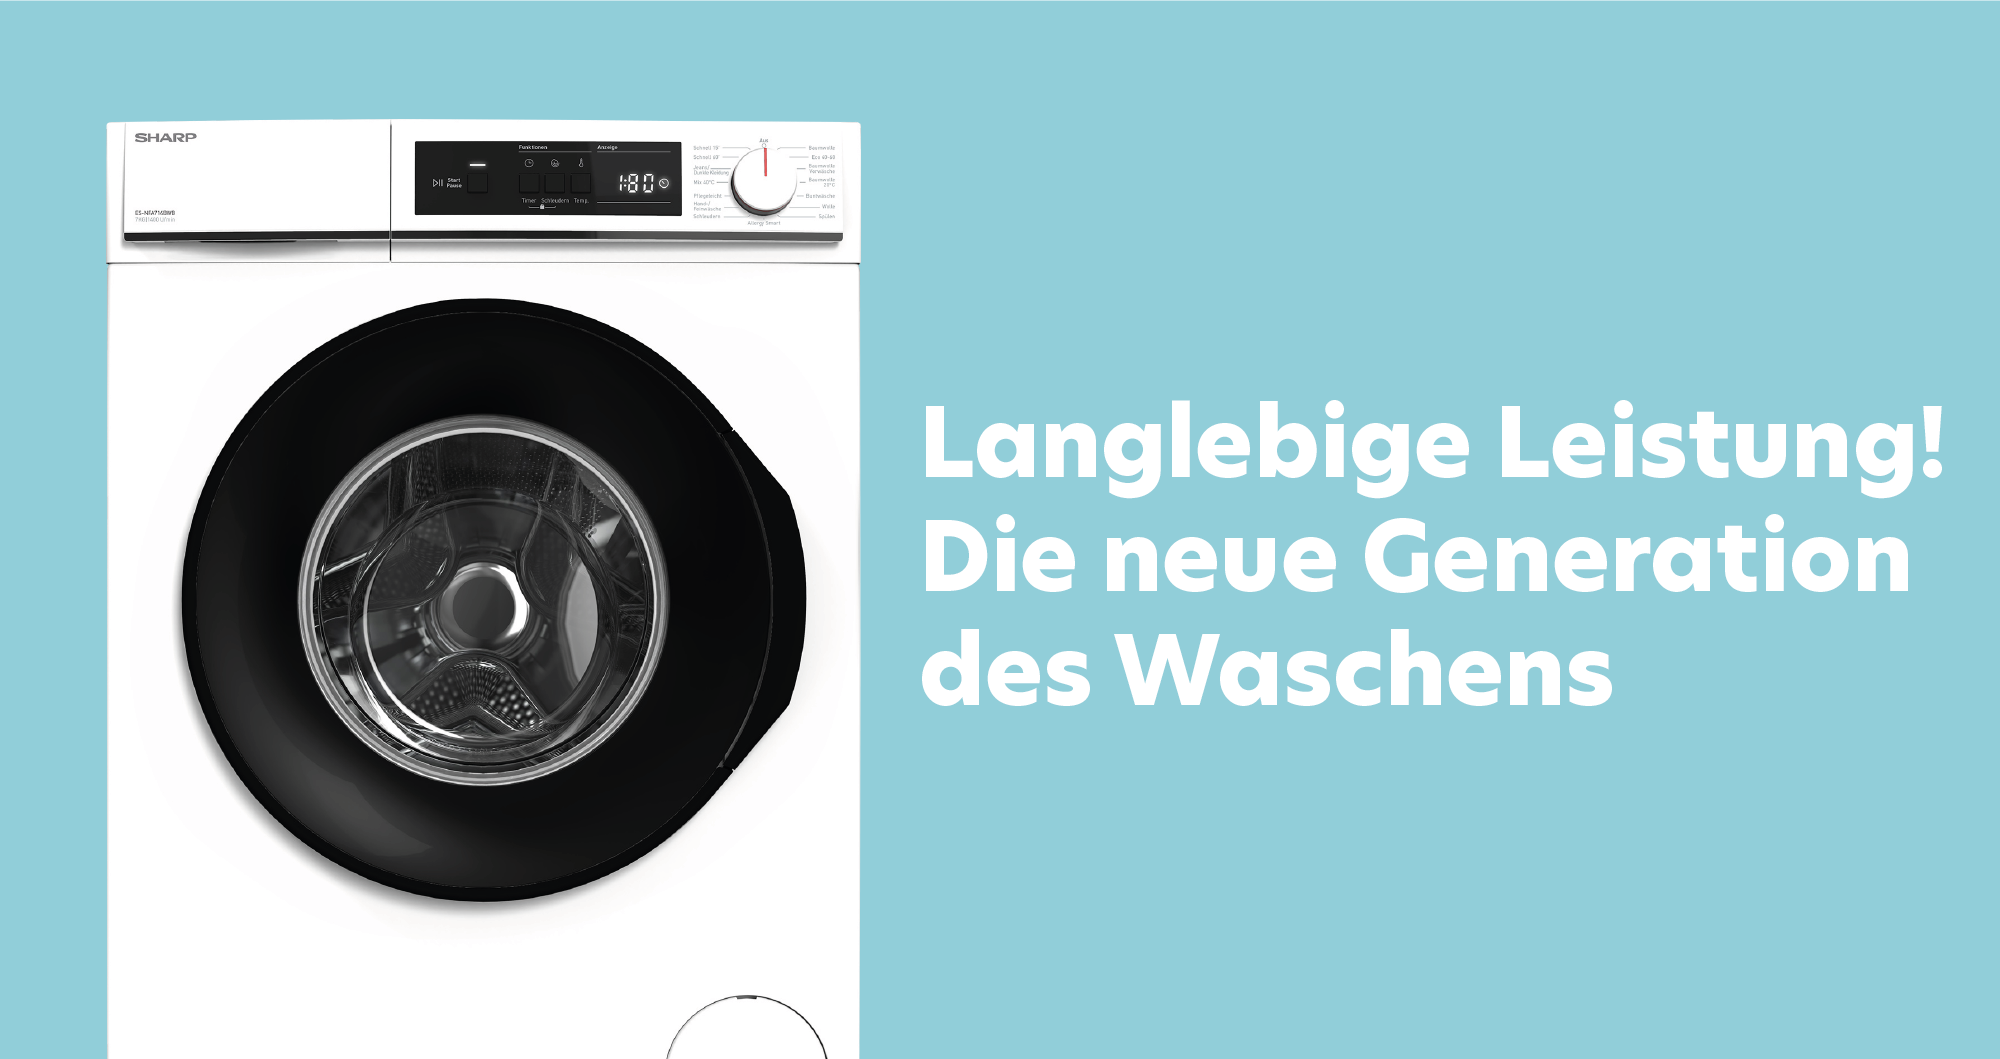 Sharp ES-NFA814BWB-DE Waschmaschine, 369,90 EUR